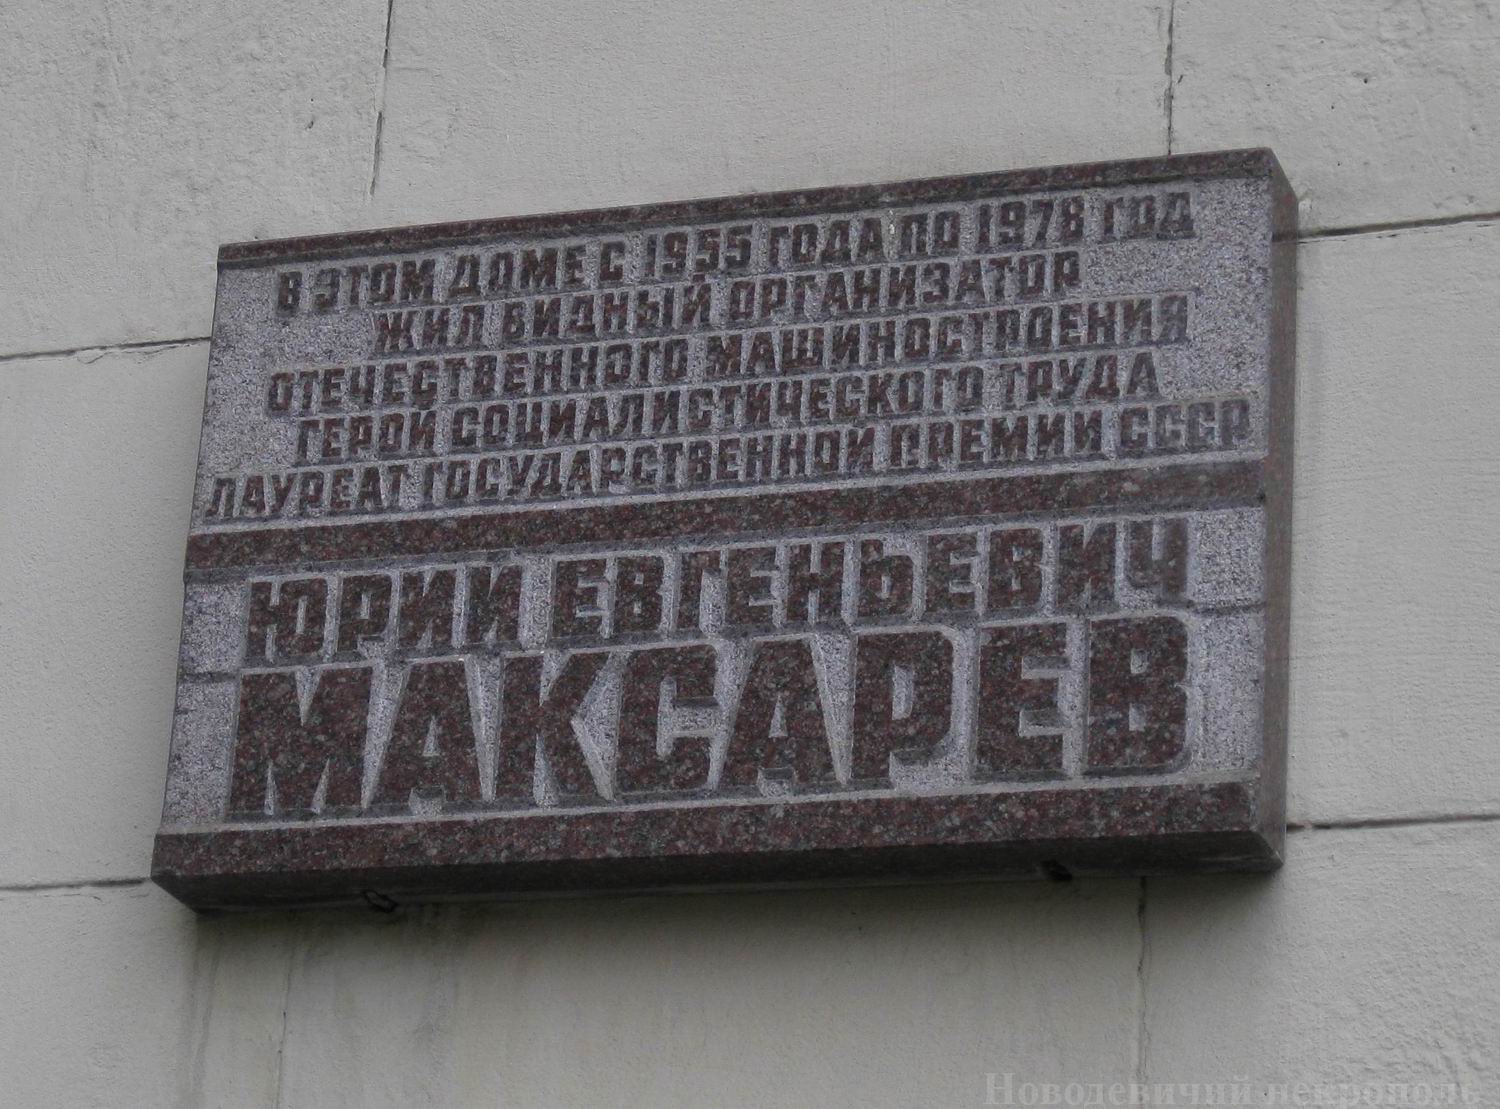 Мемориальная доска Максарёву Ю.Е. (1903–1982), арх. В.А.Климов, на Кудринской площади, дом 1, открыта 10.8.1983.